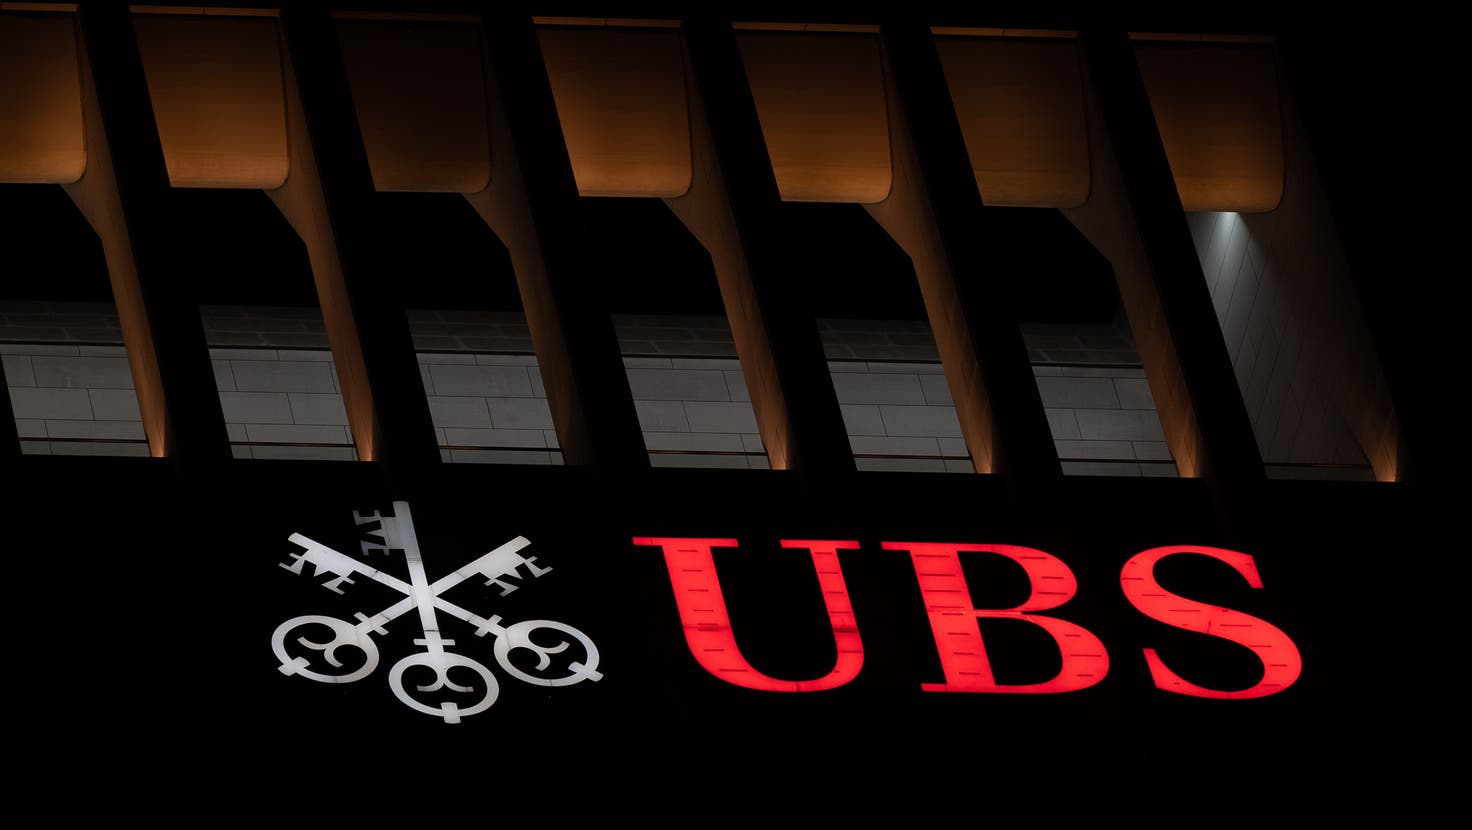 Die UBS stösst beim Aufräumen der dunklen CS-Vergangenheit immer wieder auf unliebsame Überraschungen. (Bild: Sebastian Gollnow/DPA)